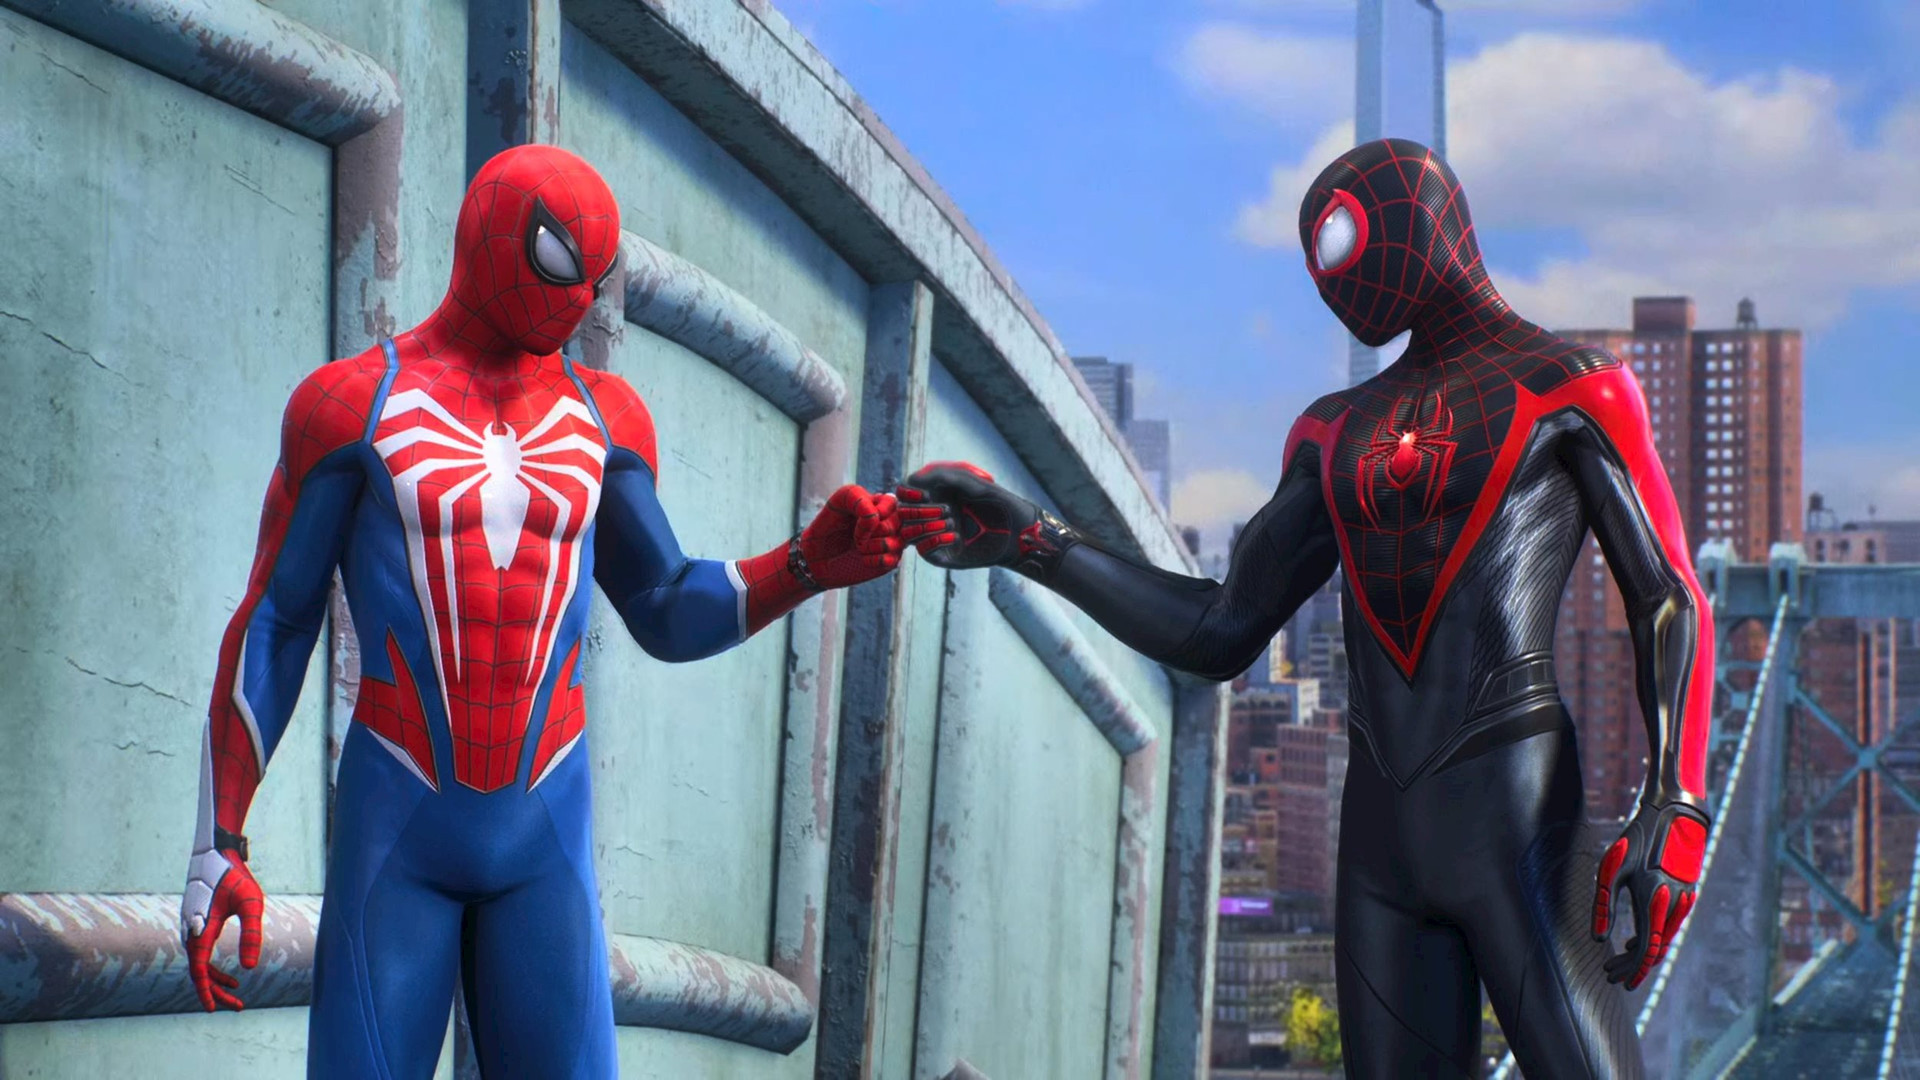 Đánh giá game Marvel’s Spider-Man 2: chắc chắn là game về Người Nhện hay nhất từ trước đến nay